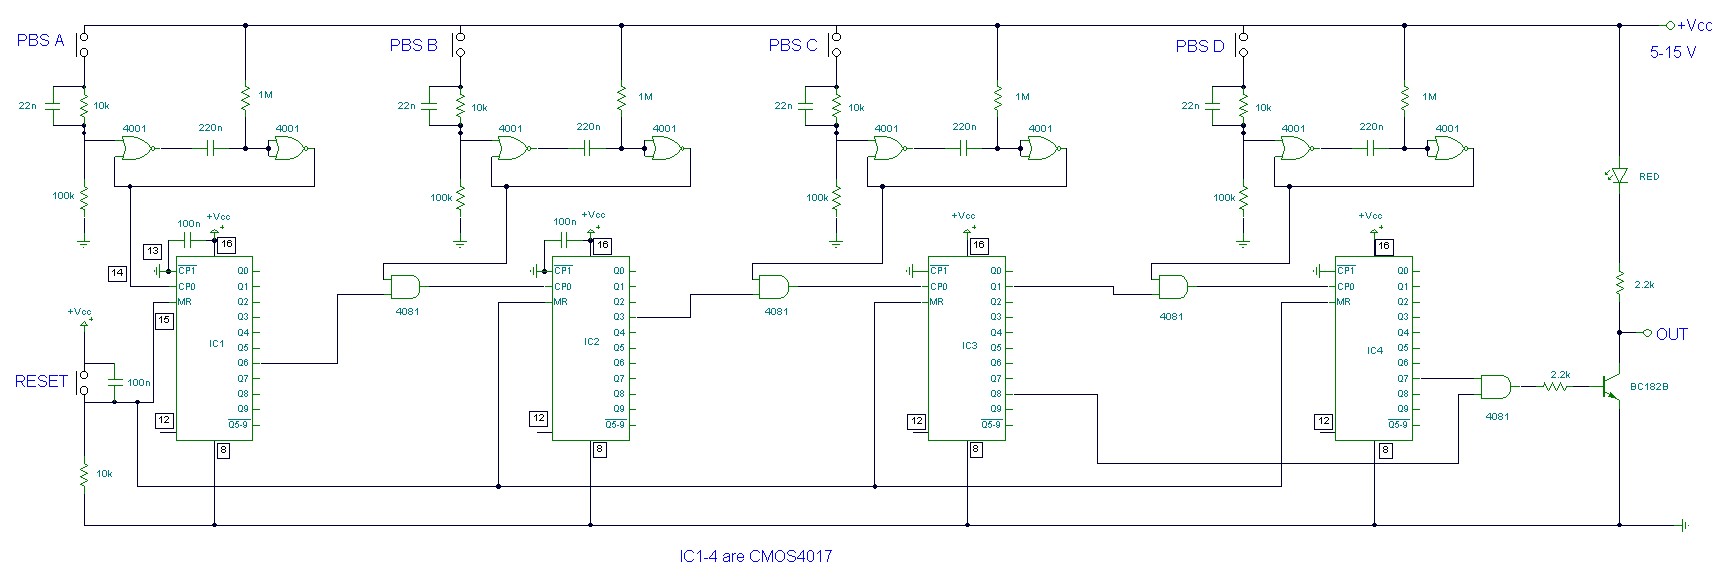 Fascinating Digital bination Lock Circuit Diagram Project Tutorial Alarms Multisim Circuits Digital binationfull Full size